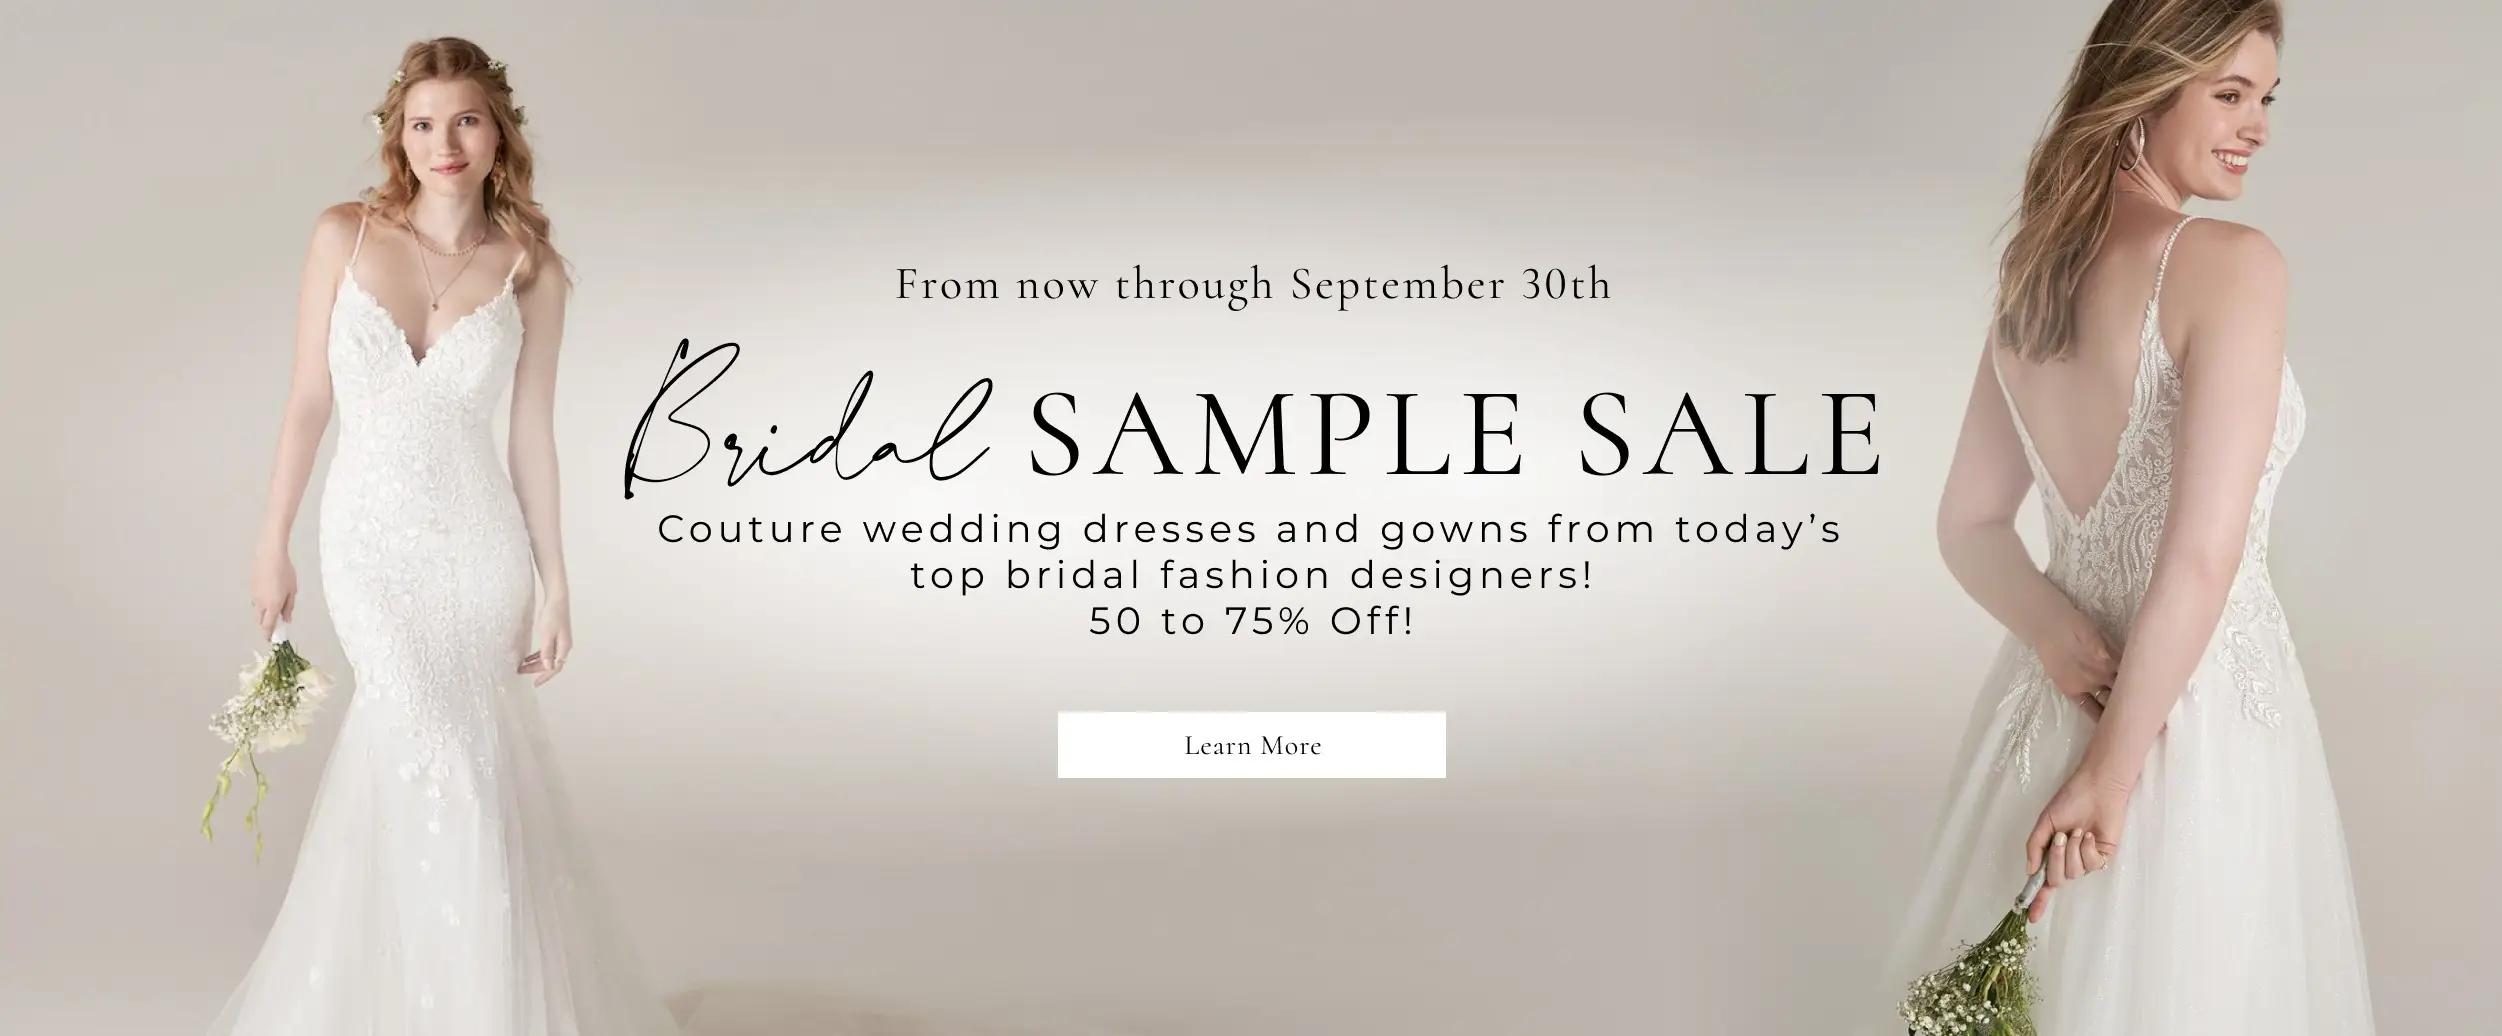 Bridal Sample Sale Banner Desktop